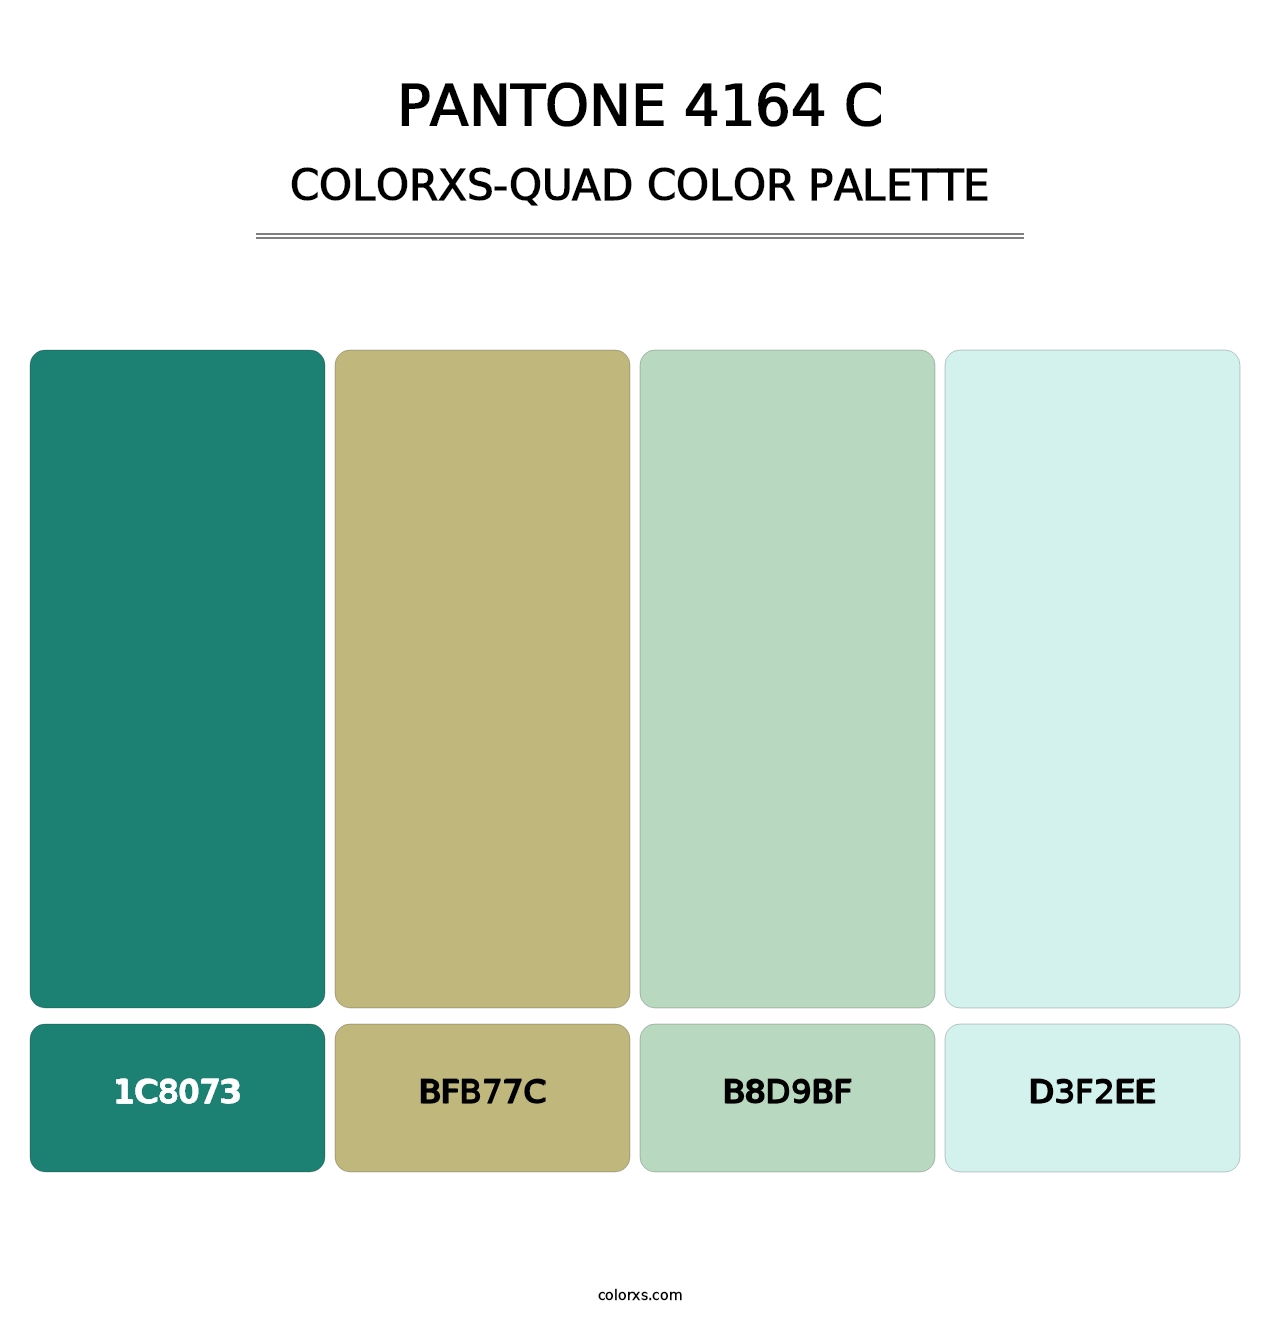 PANTONE 4164 C - Colorxs Quad Palette